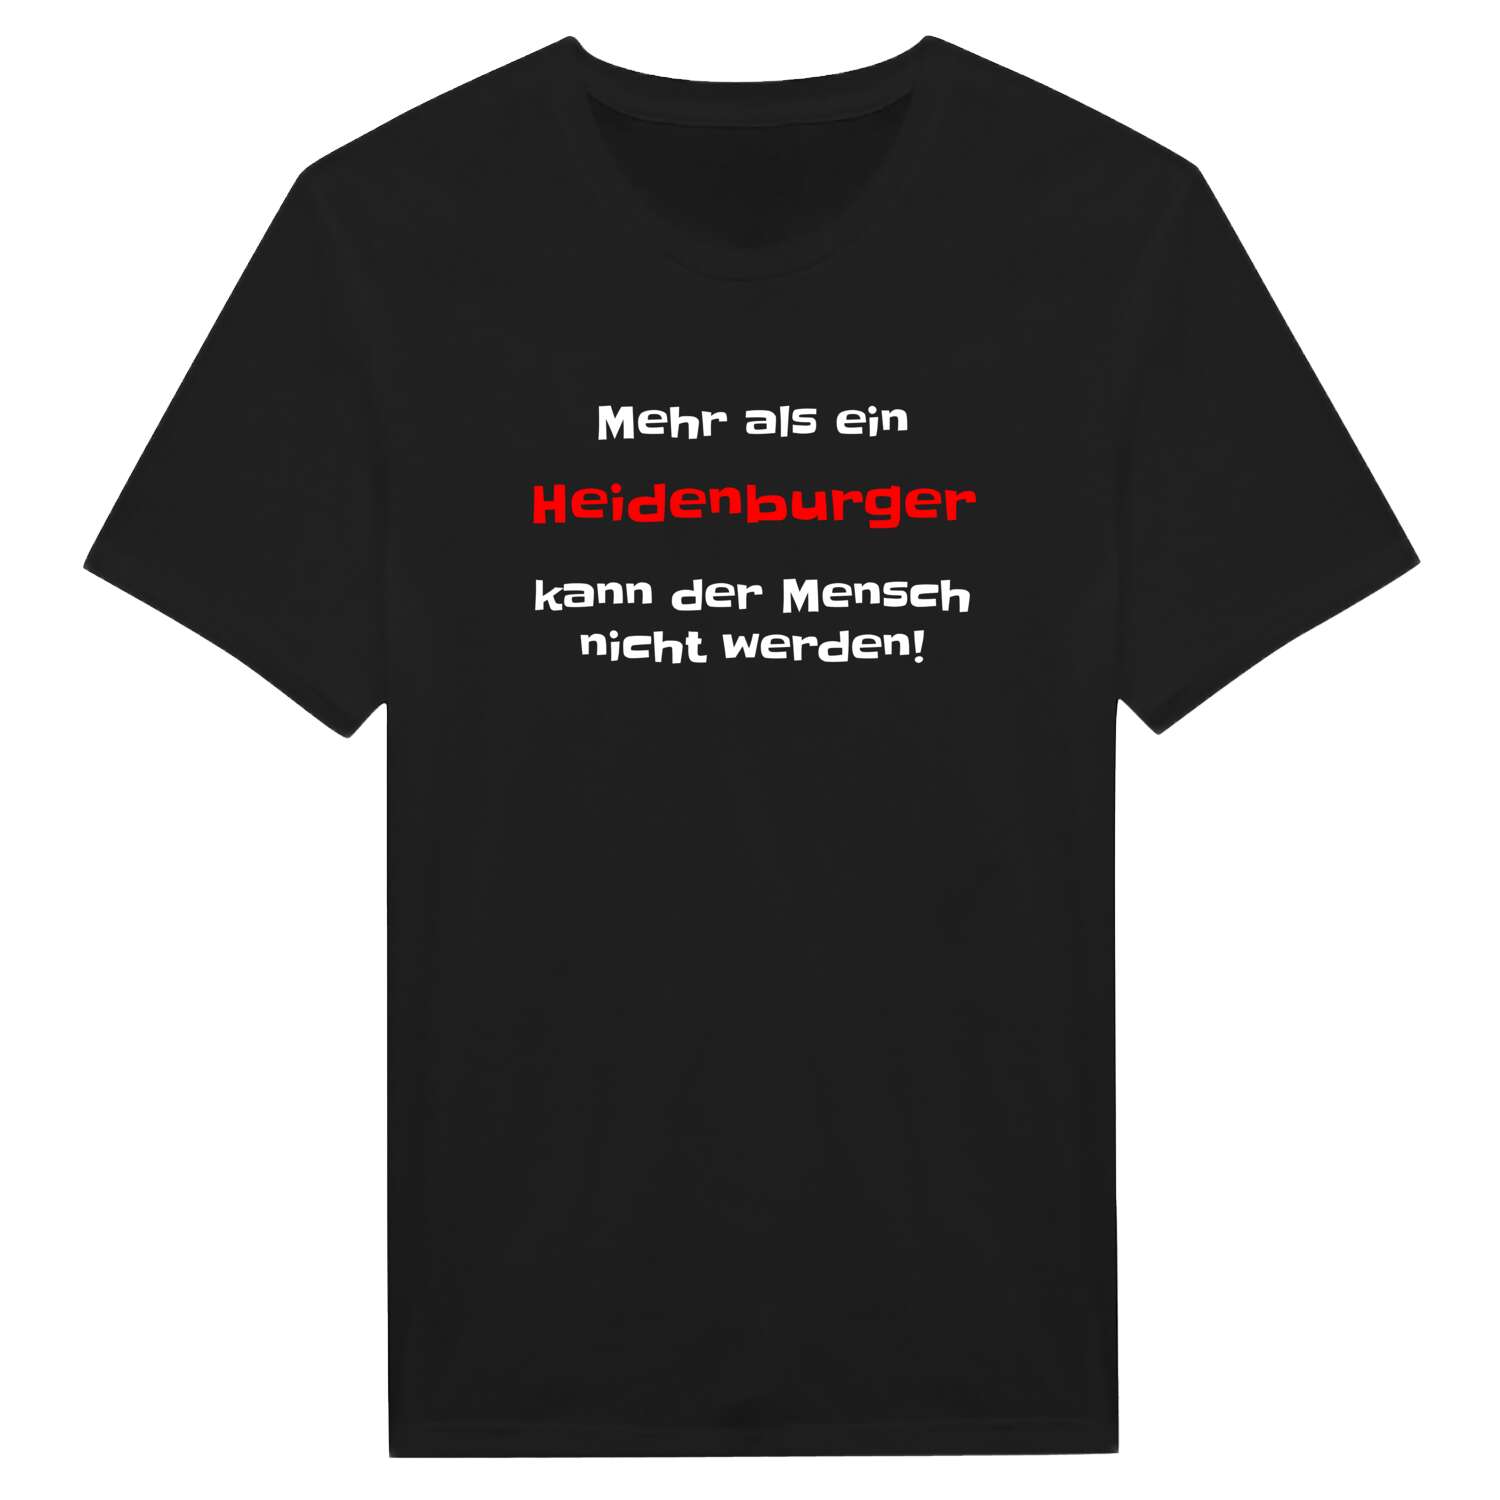 Heidenburg T-Shirt »Mehr als ein«